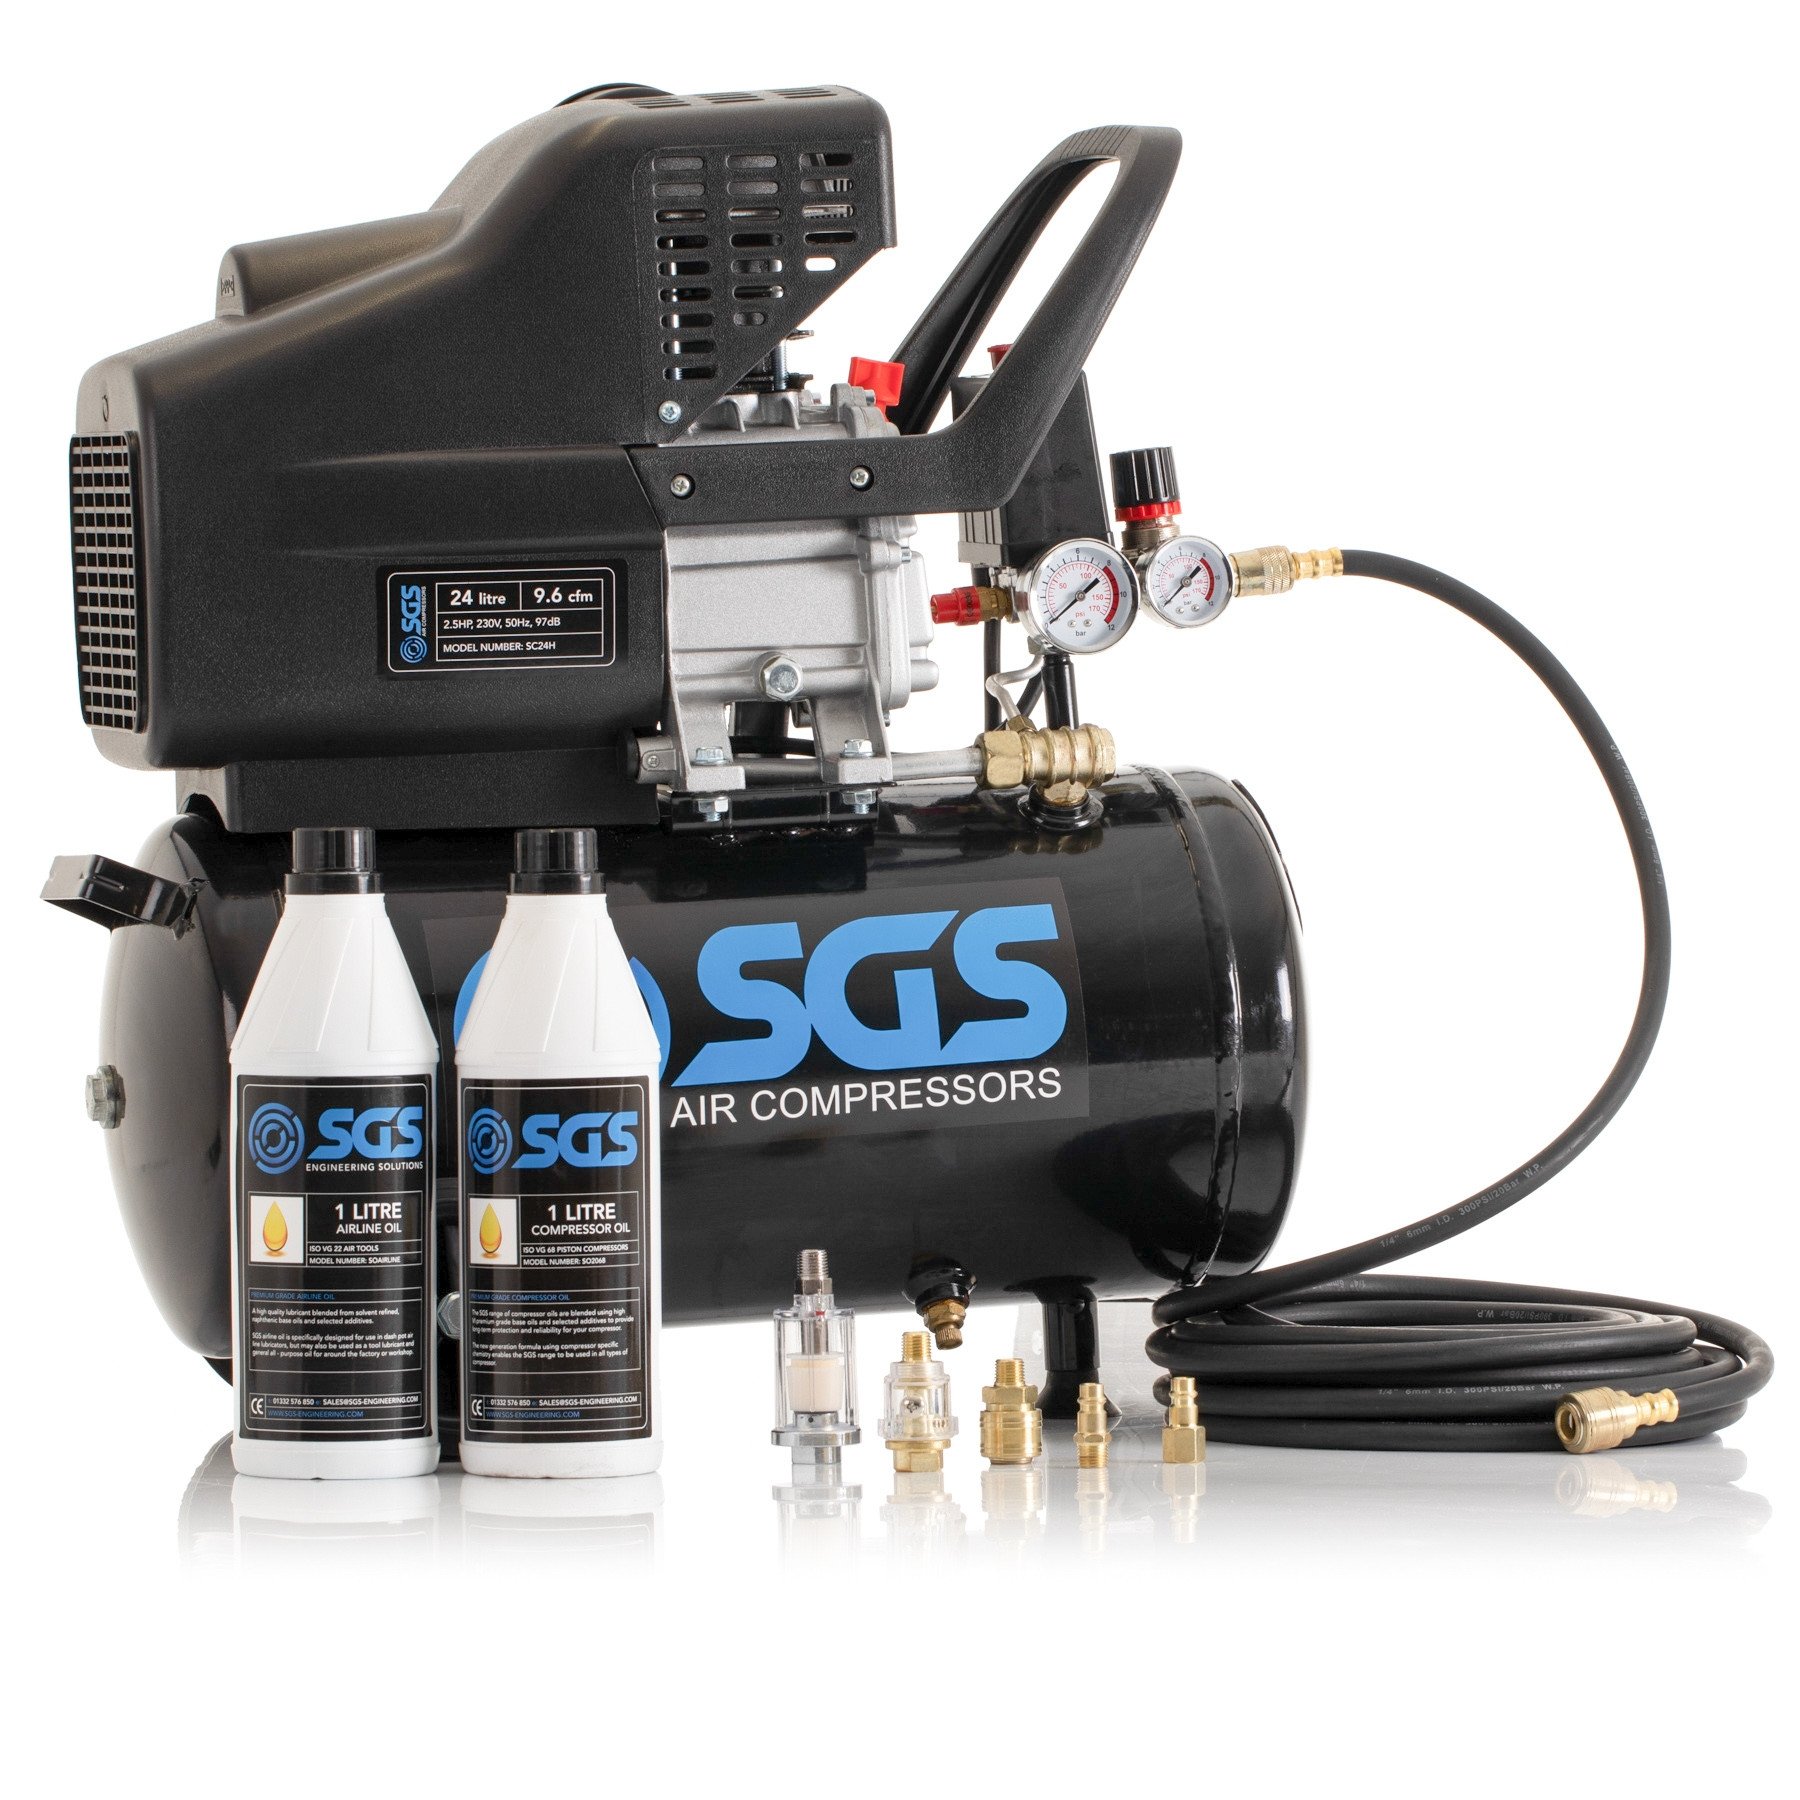 SGS 24升直接驱动空气压缩机和入门套件-9.6CFM 2.5HP 24L